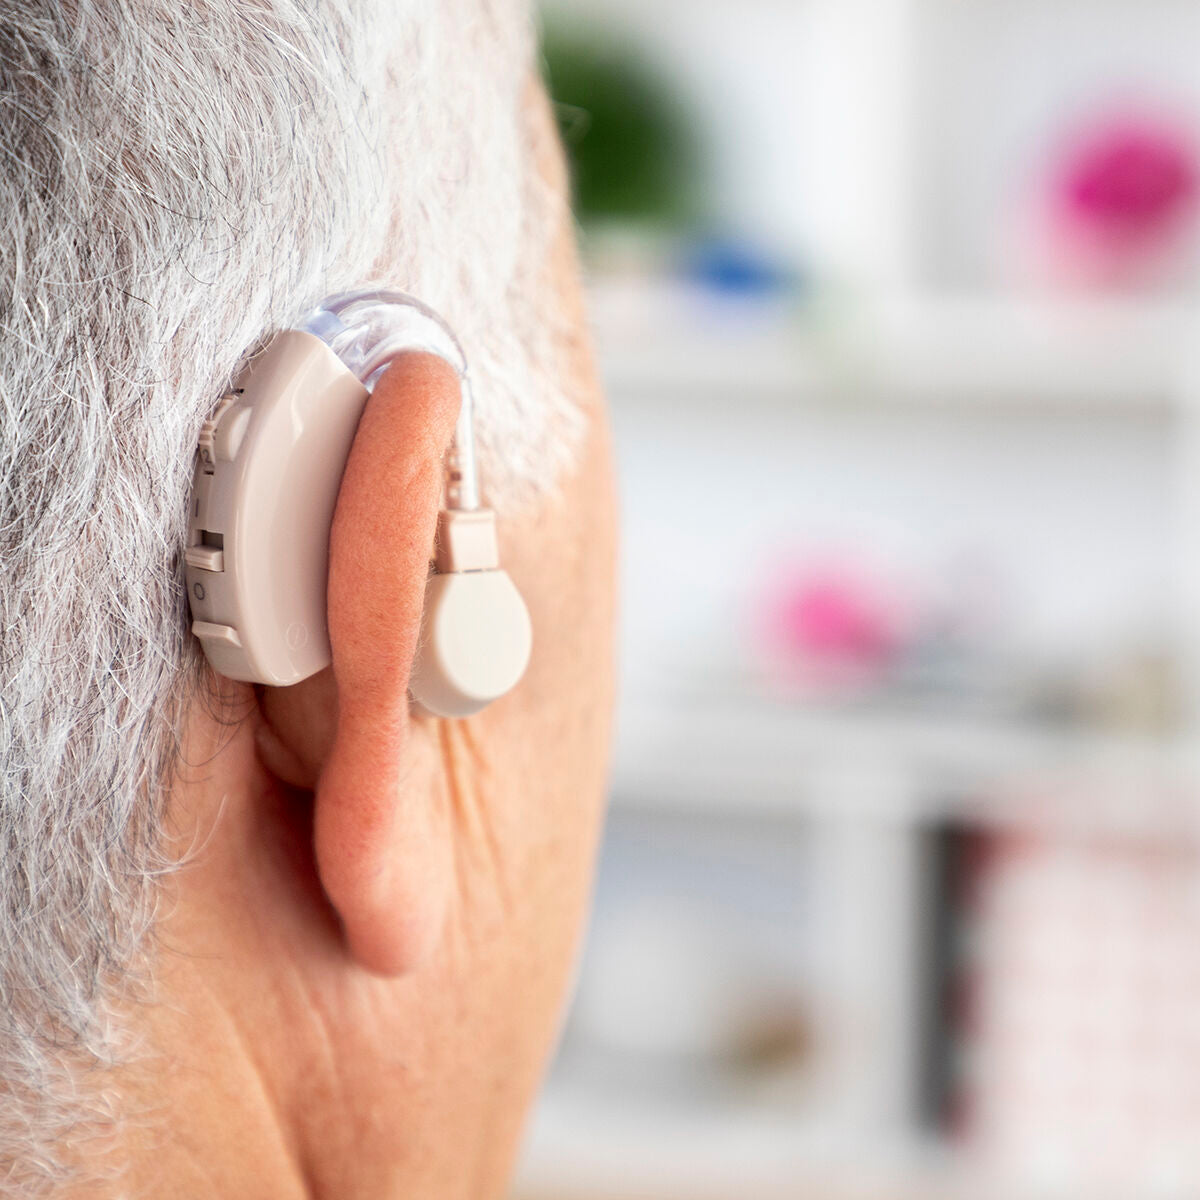 Hinter-dem-Ohr-Hörverstärker mit Zubehör Welzy InnovaGoods 1 Stück Gesundheit und Körperpflege, Medizinisches Zubehör & Ausrüstung InnovaGoods   